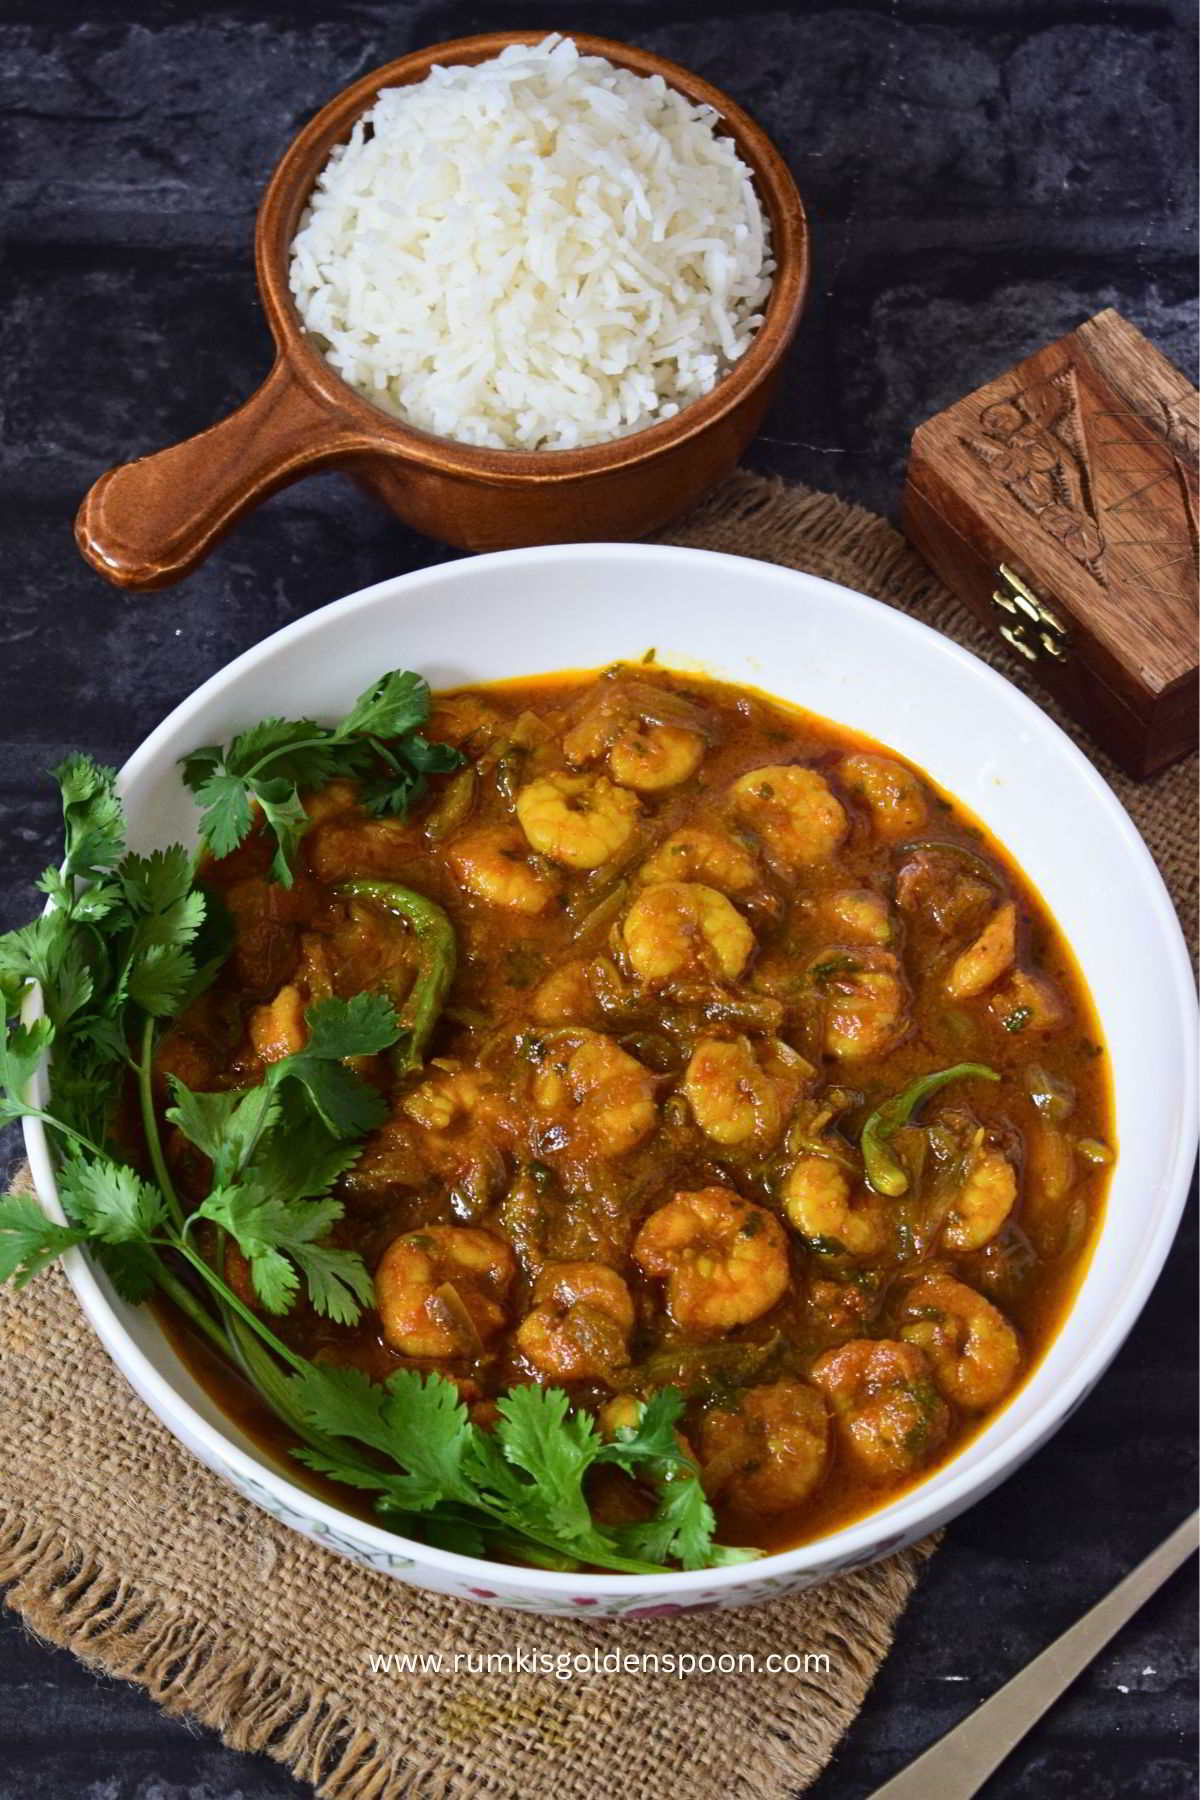 king prawn bhuna, prawn bhuna, how to make prawn bhuna, prawn bhuna curry, Bengali prawn bhuna recipe, how to make prawn curry Bengali style, easy prawn bhuna recipe, homemade prawn bhuna, prawn recipe, prawn recipe Indian, prawn curry, Rumki's Golden Spoon